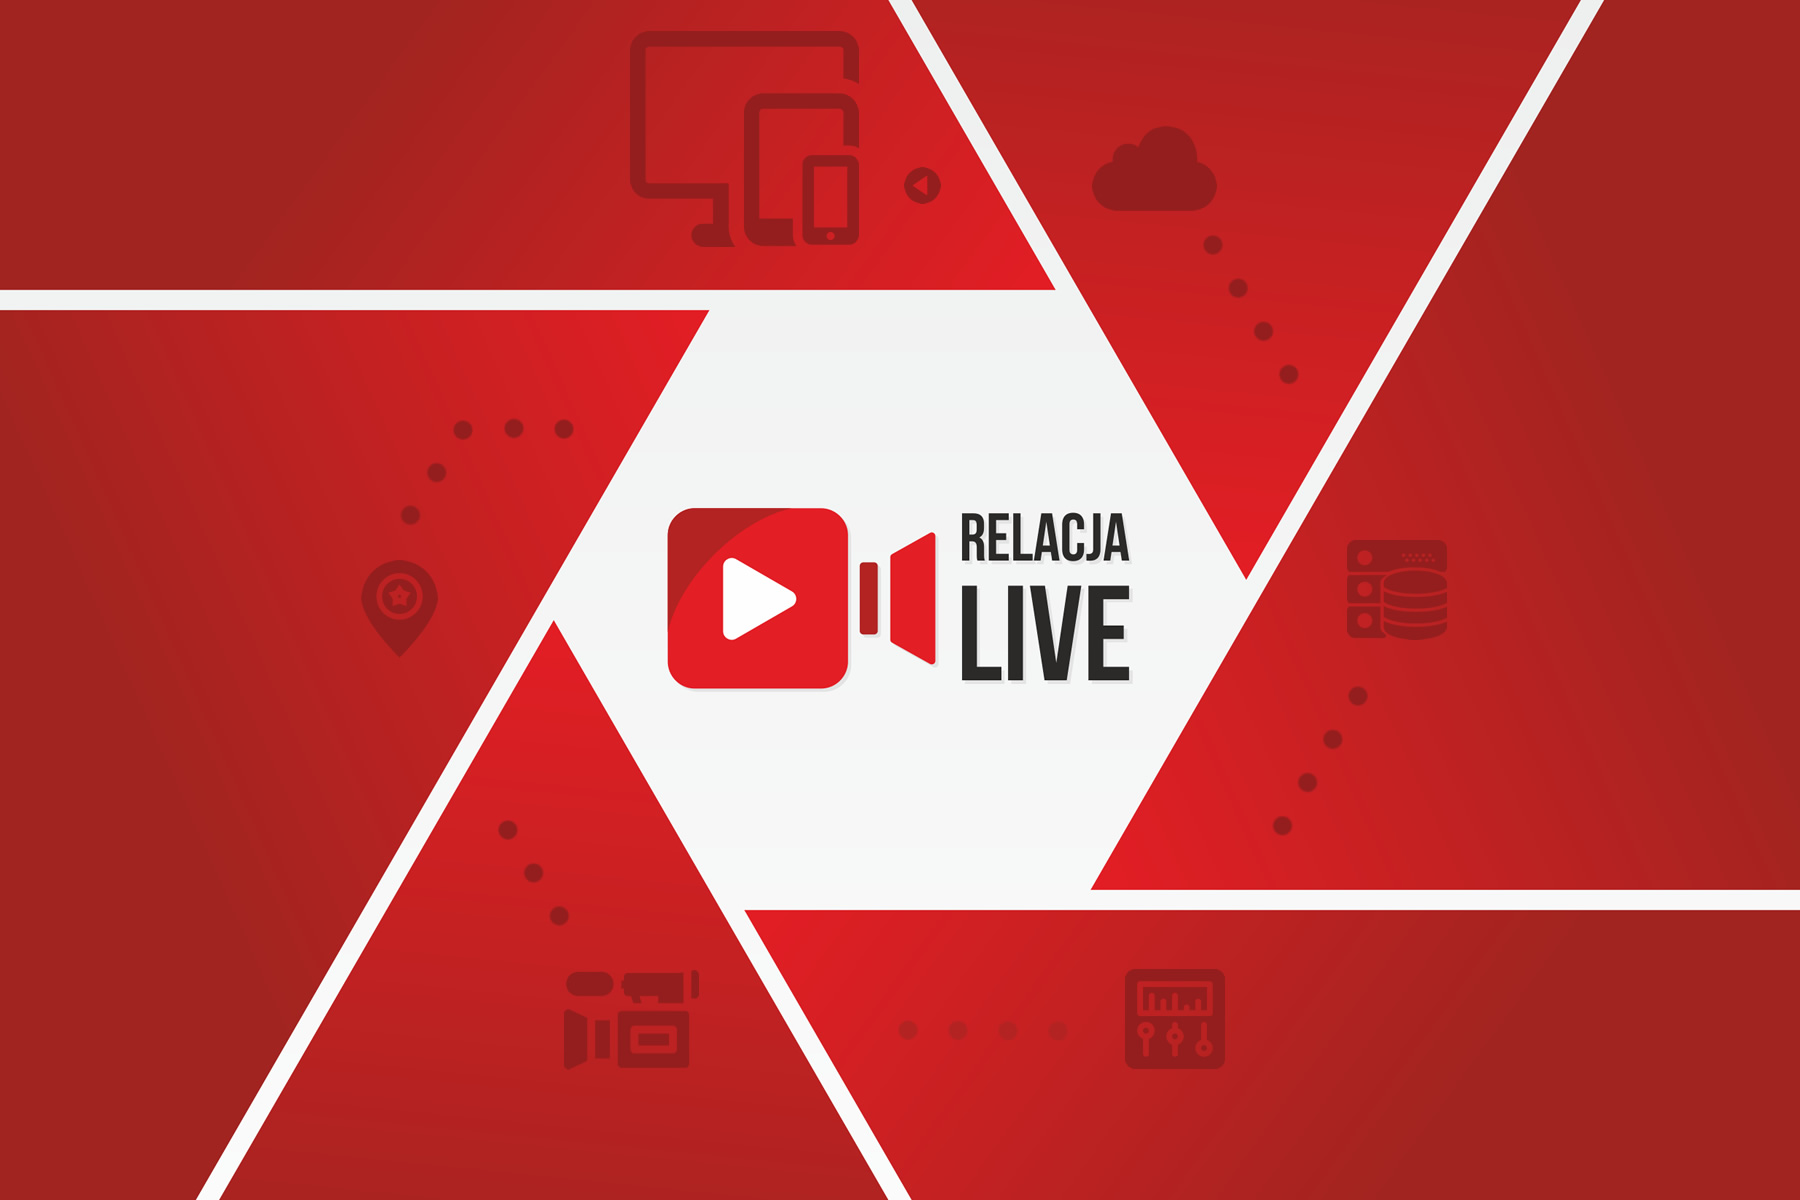 Relacja LIVE | Transmisje na żywo stream online Warszawa